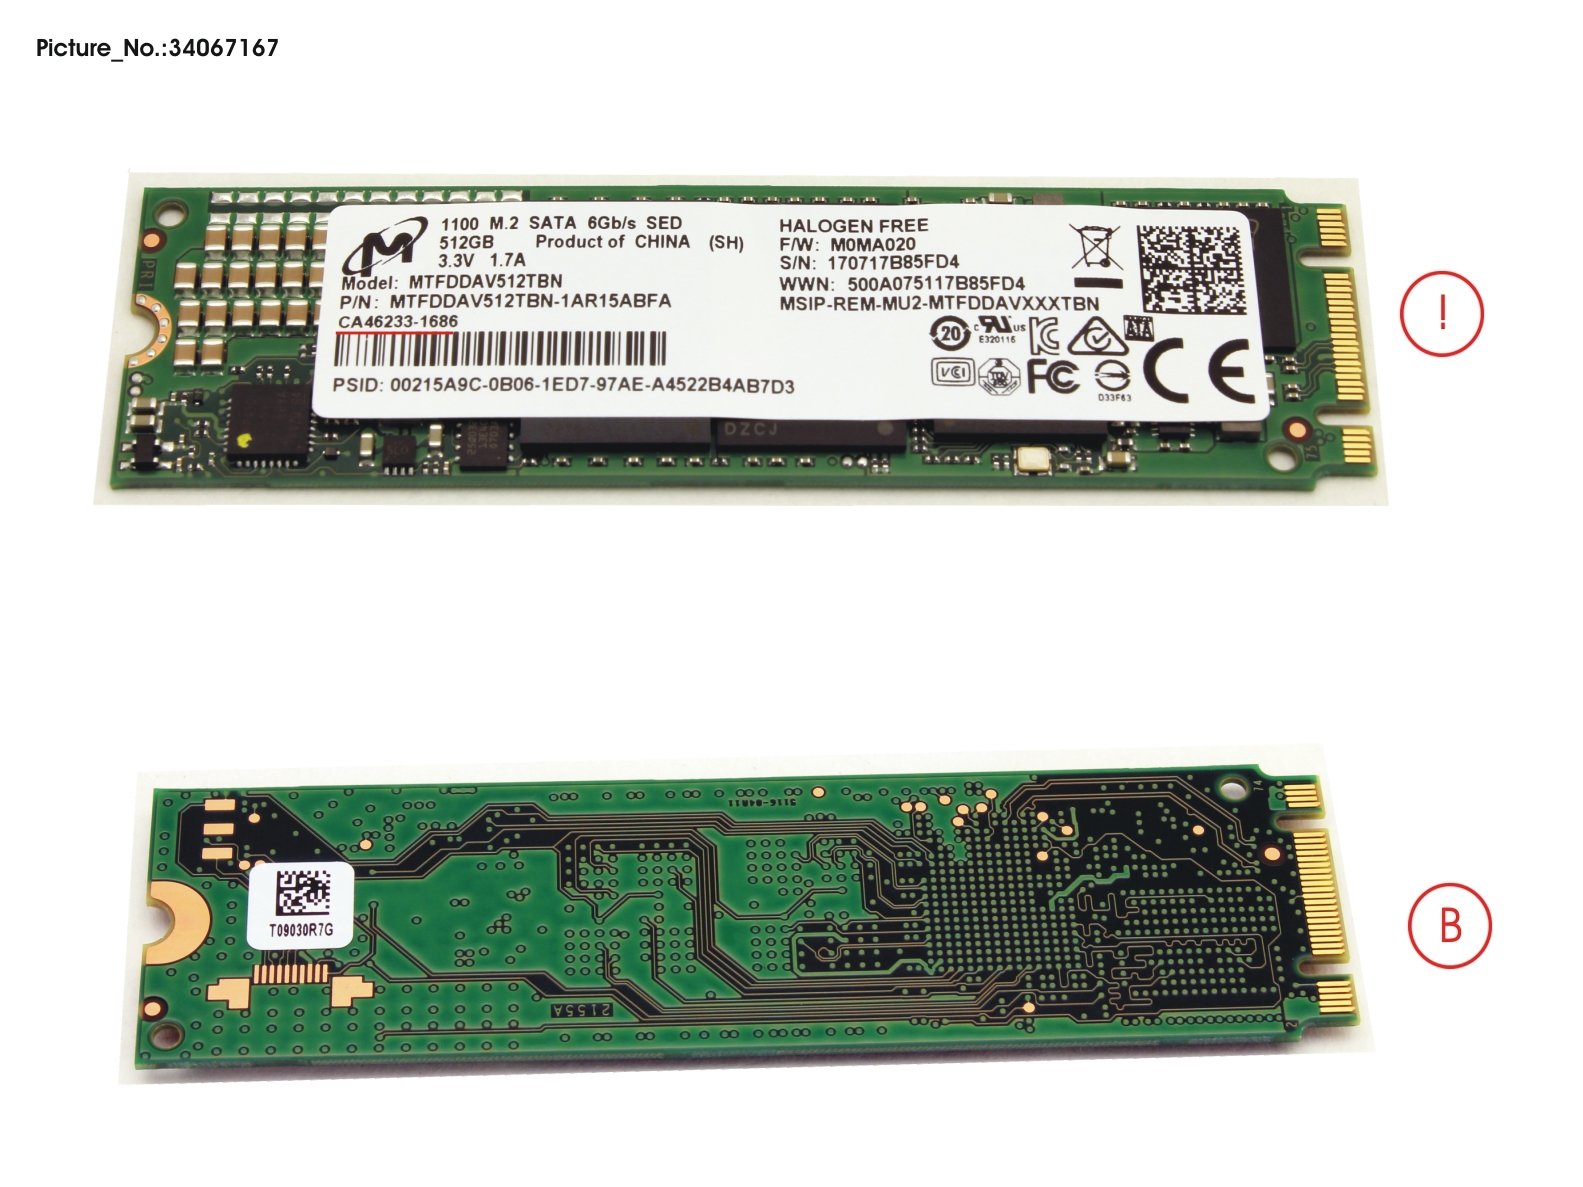 SSD S3 M.2 2280 MOI 1100 512GB(OPAL)